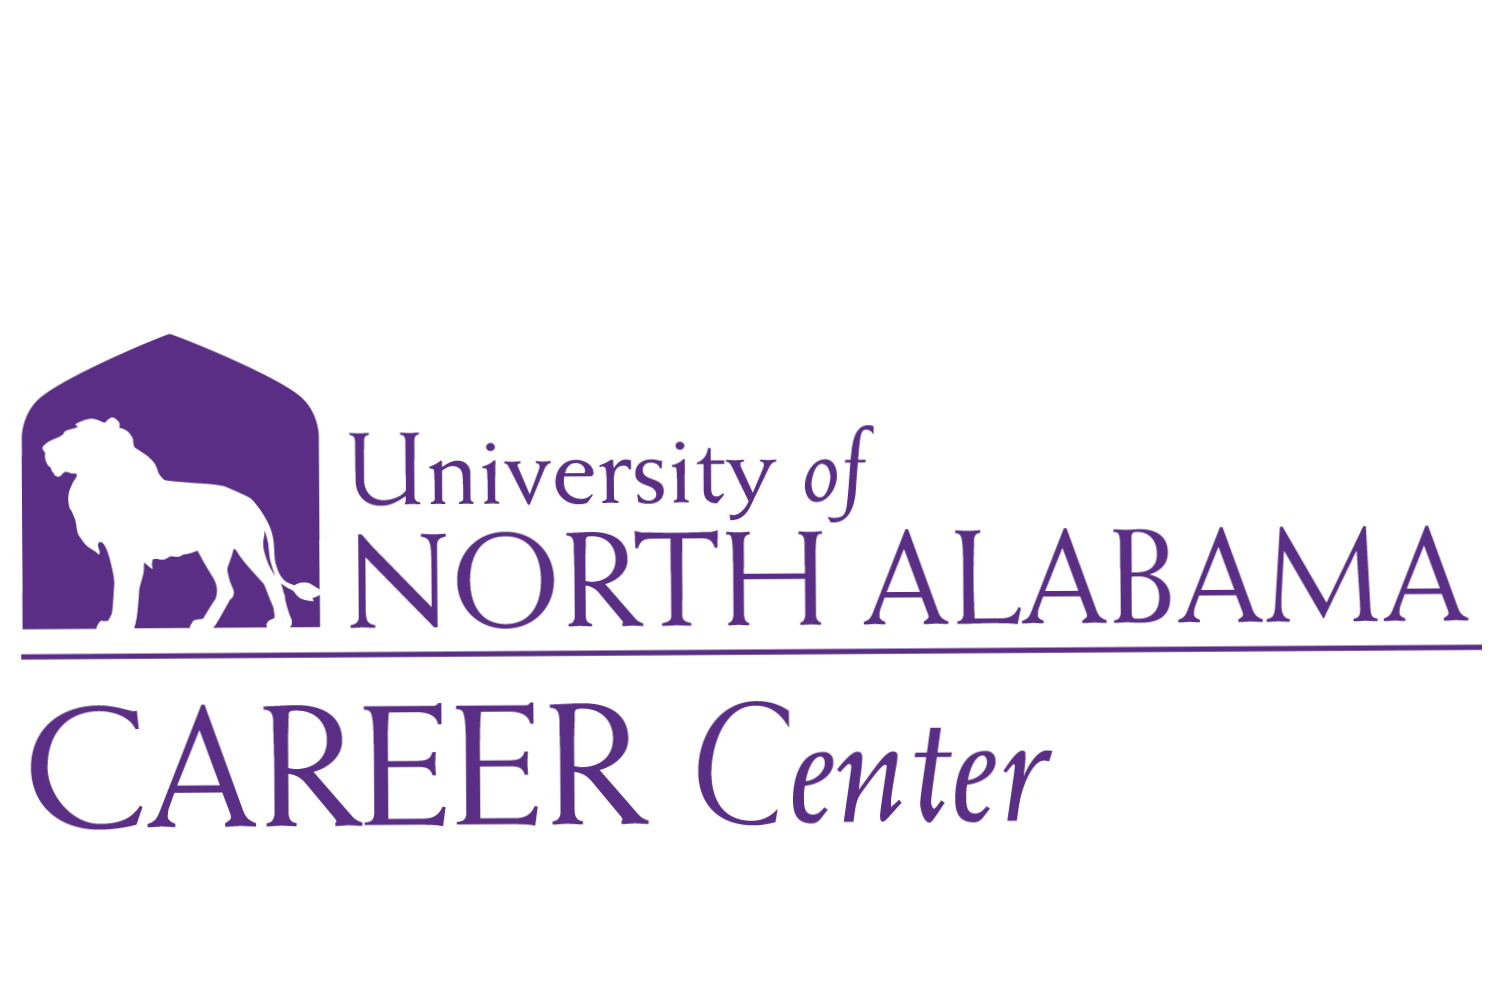 Understanding UNA's Career Center